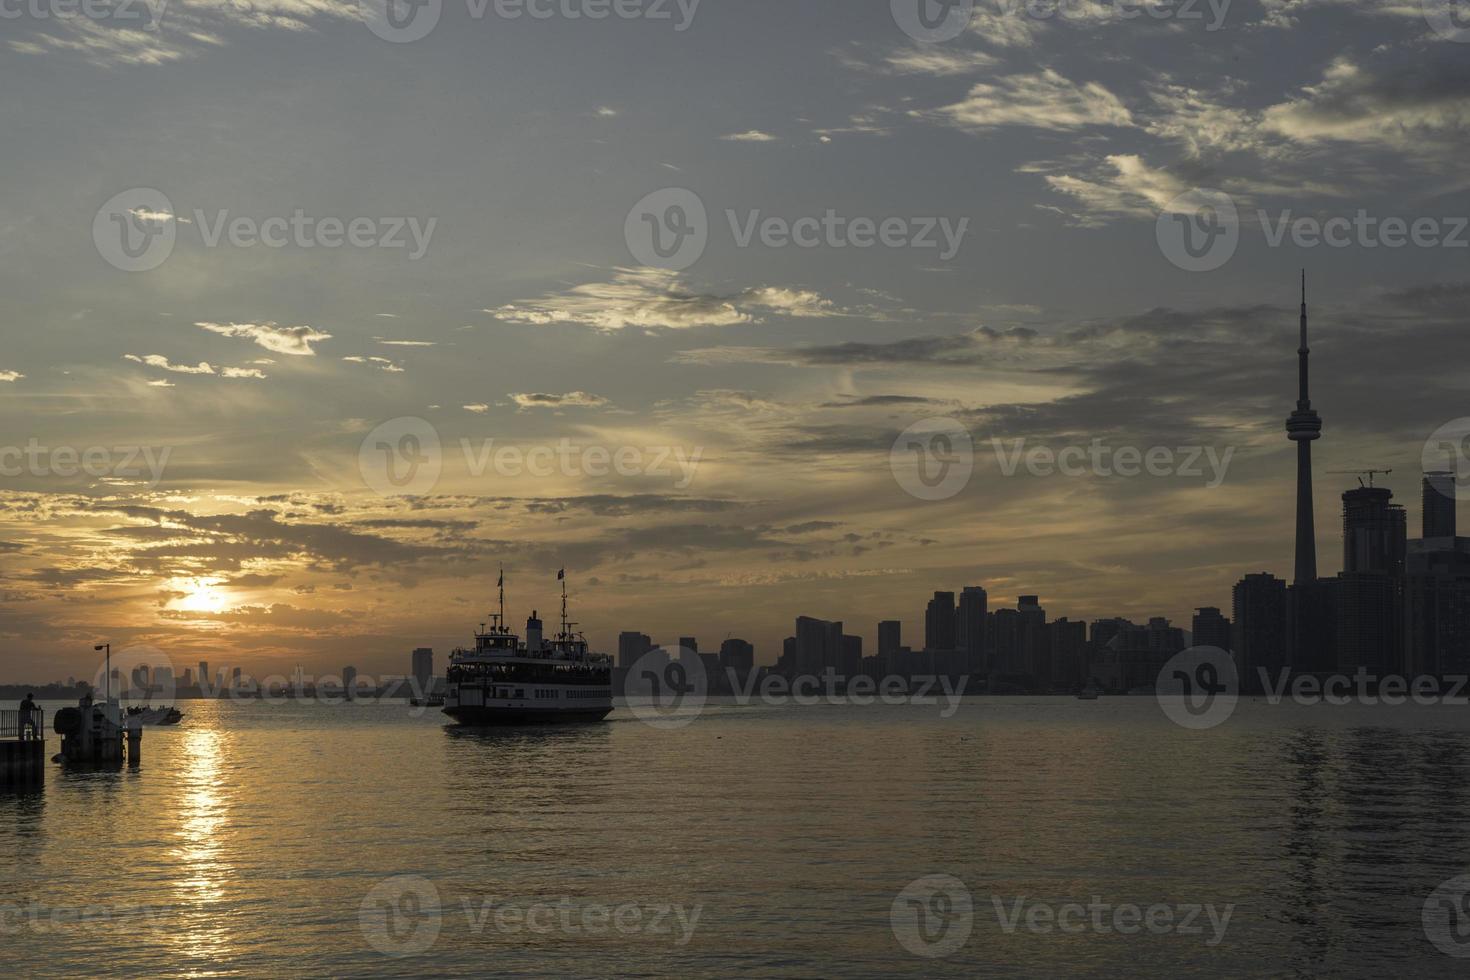 een passagier veerboot kruisen meer Ontario foto